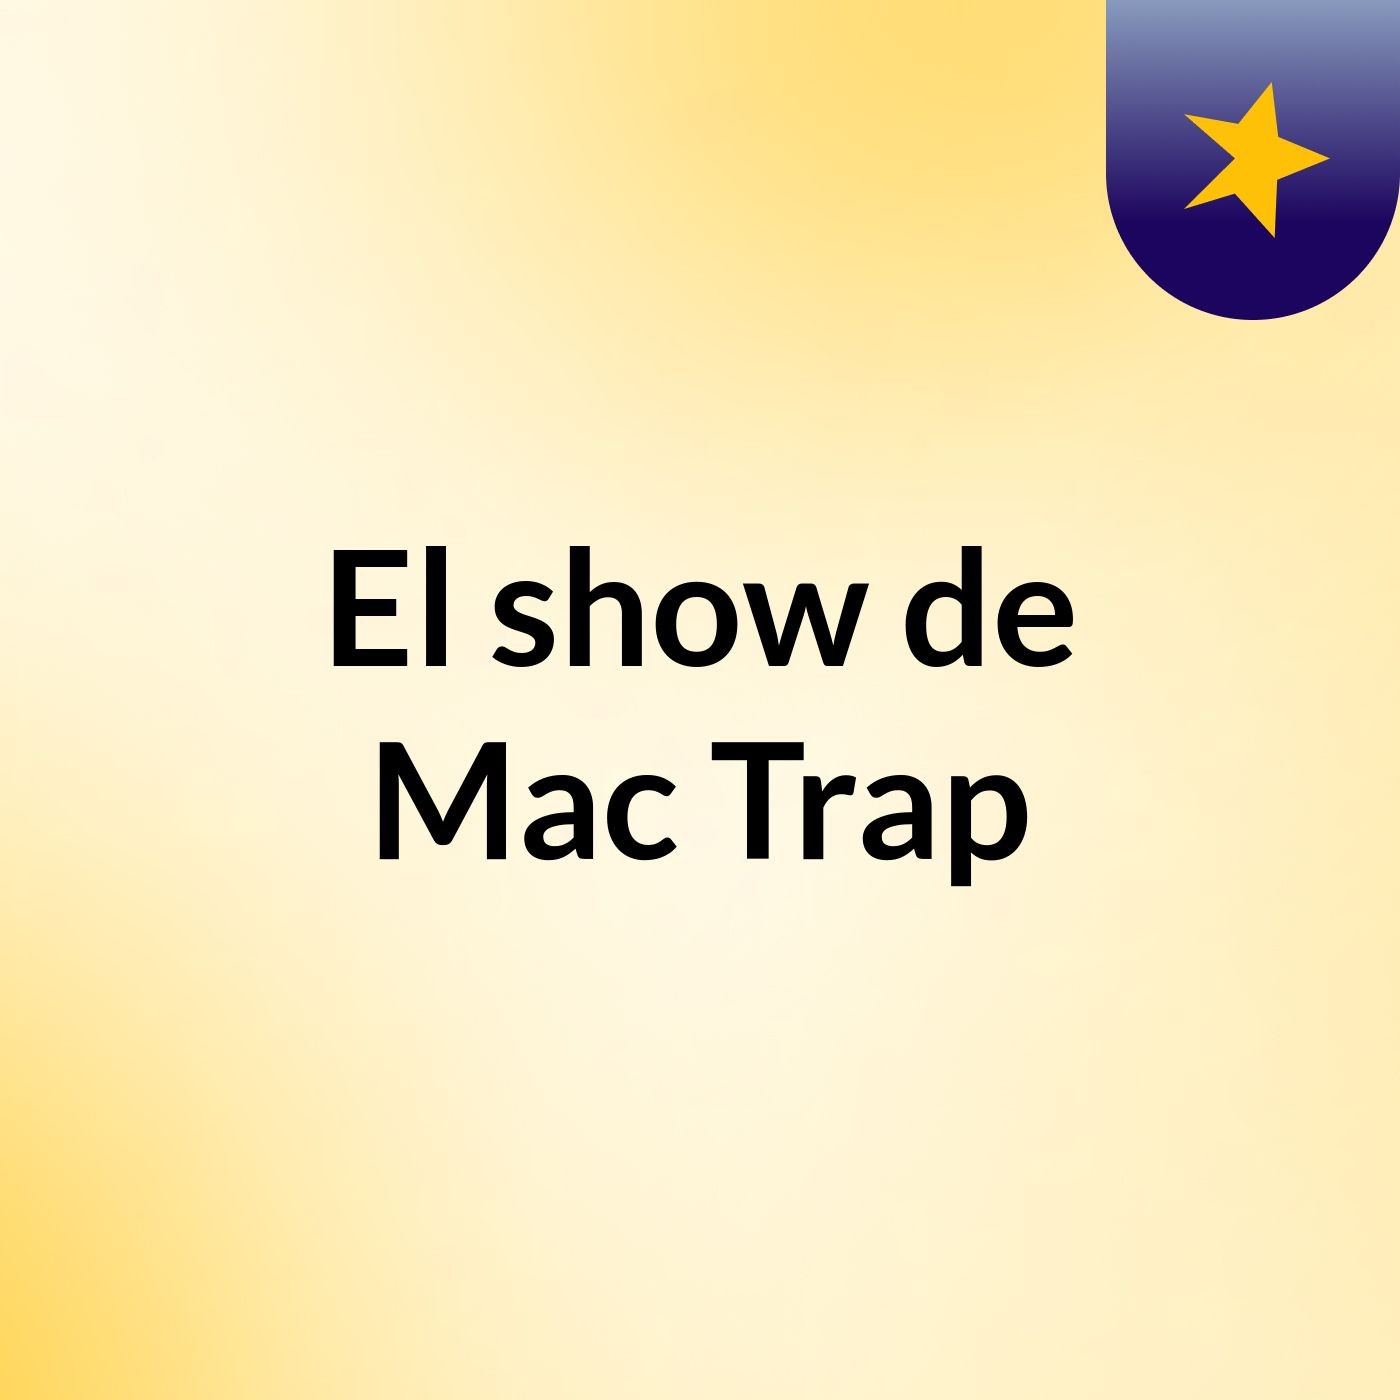 Mac Trap